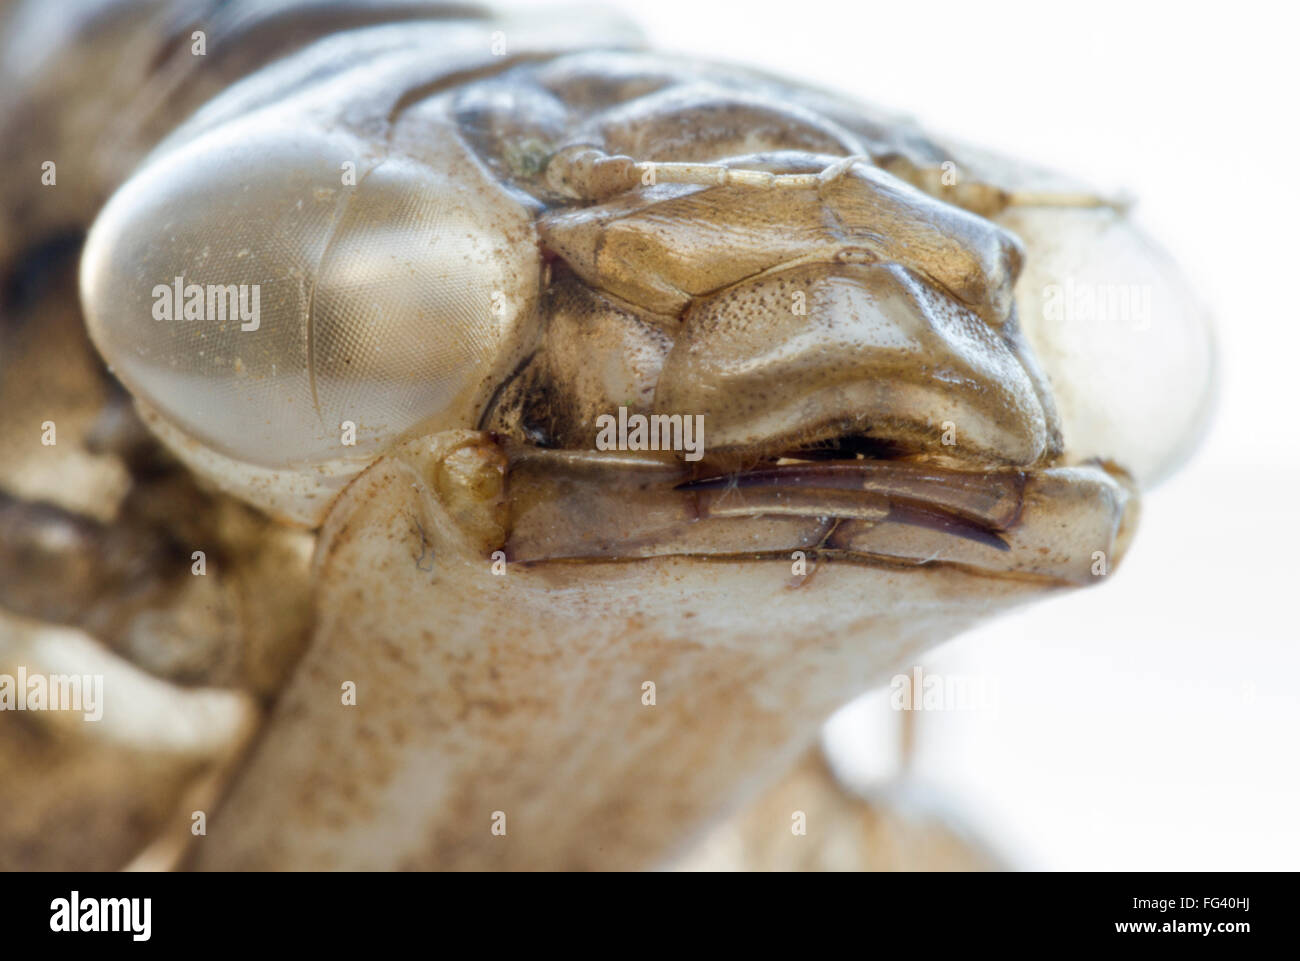 L'imperatore Ninfa di libellula caso, macro close up del viso e ganasce. vecchia pelle, guscio vuoto, spostato uno alla prossima fase della vita. Foto Stock